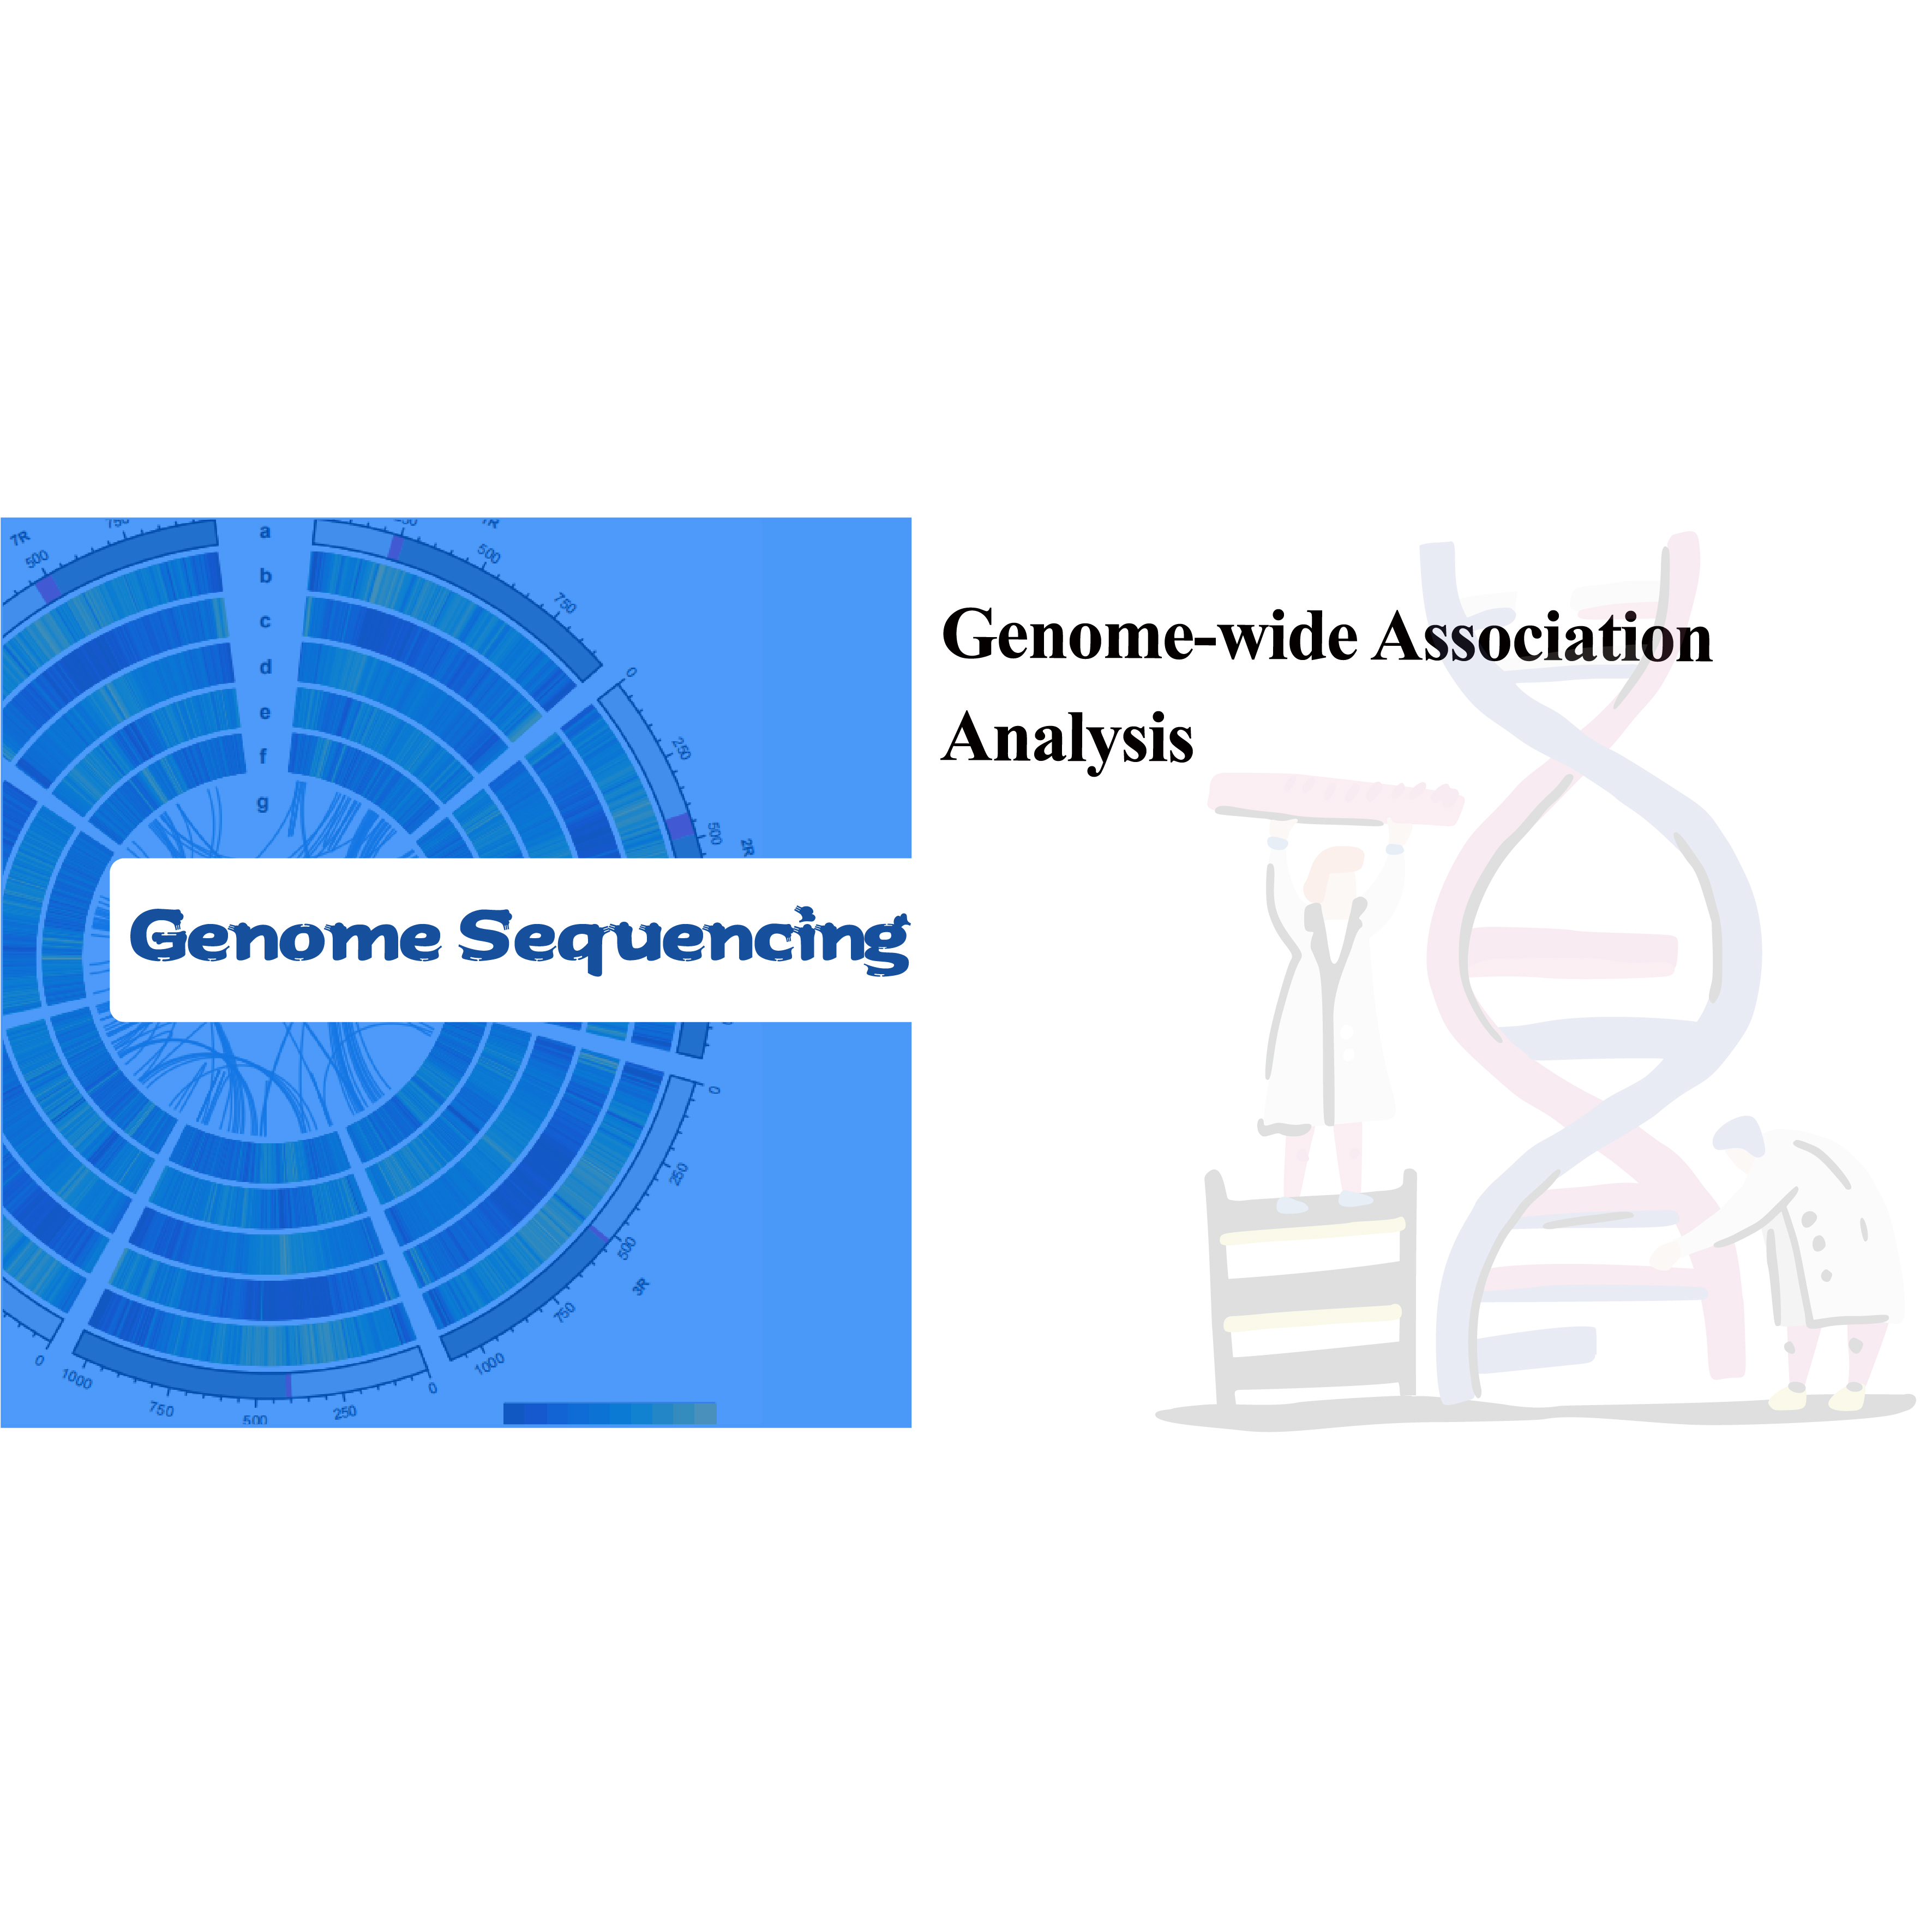 Uhlalutyo lwe-Genome-wide Association